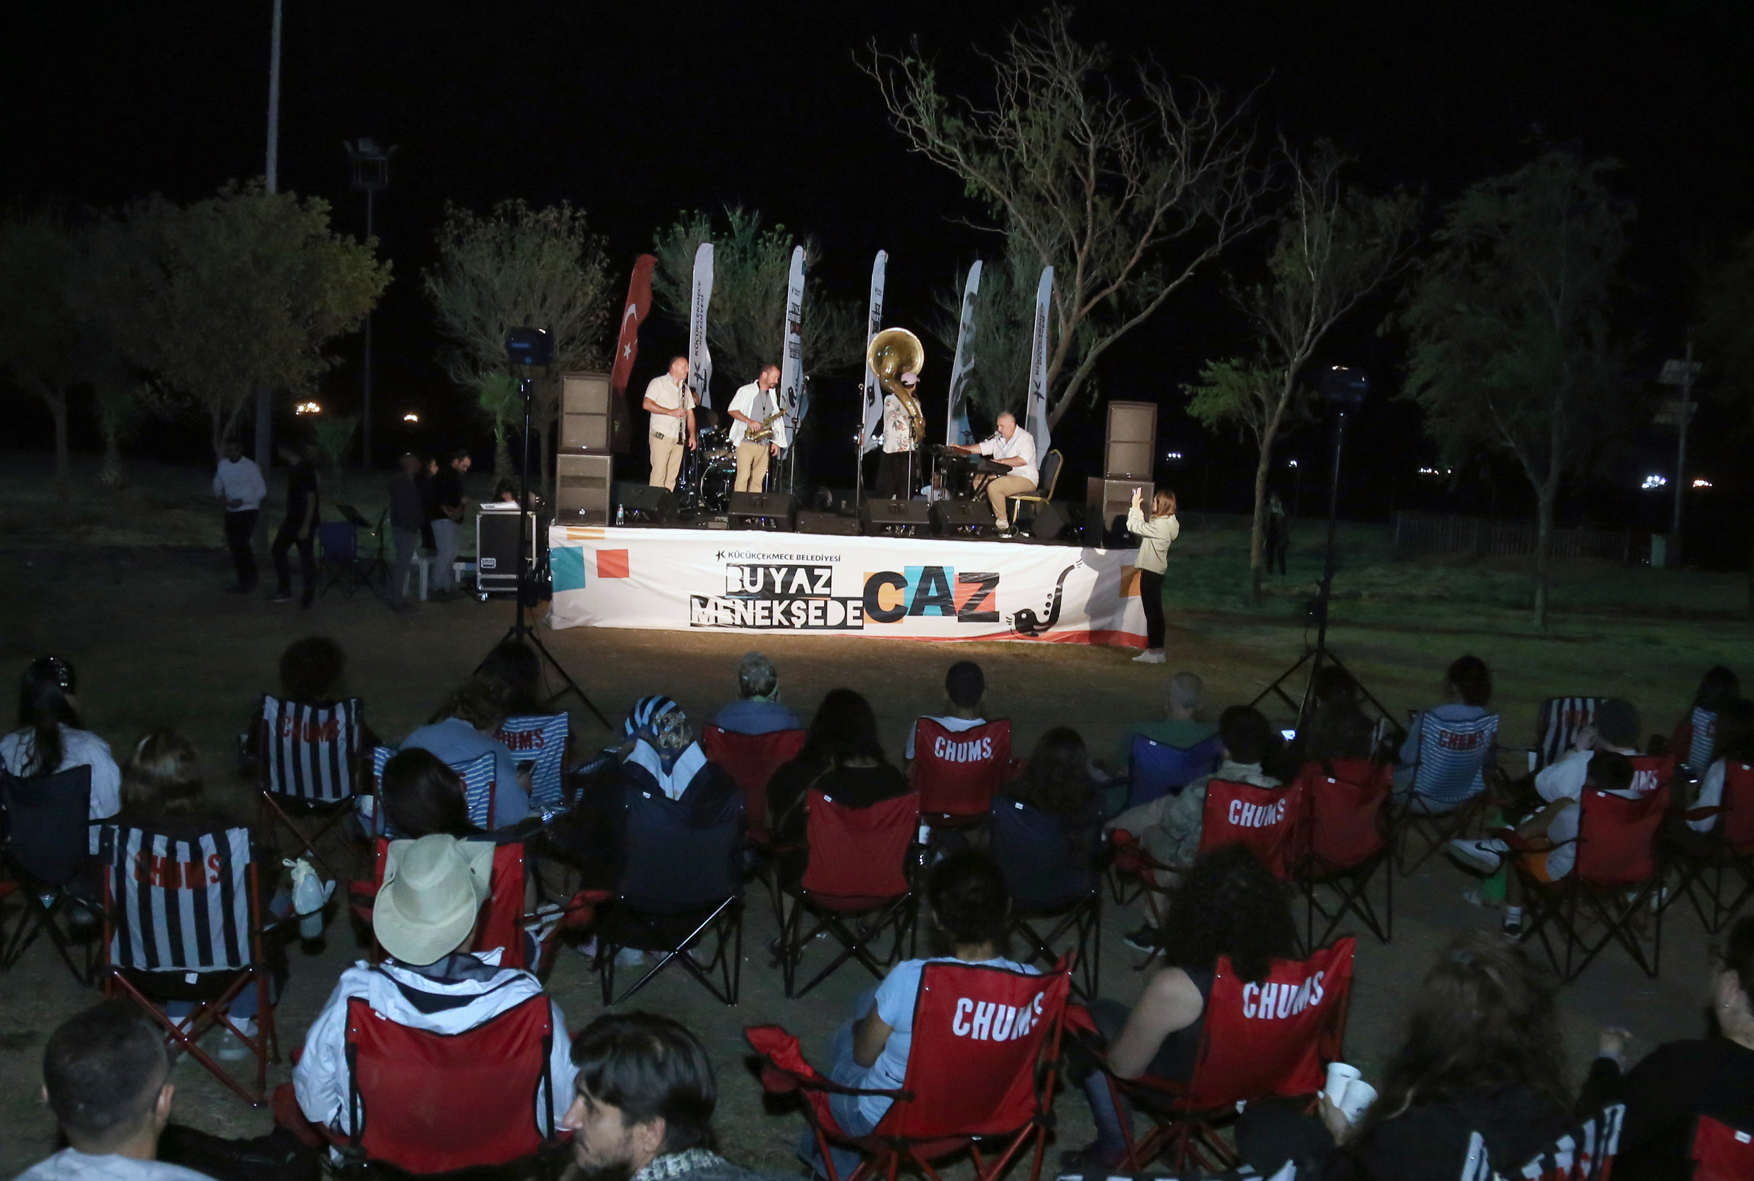 Küçükçekmece’deki Parklarda Sanat Var etkinlikleri ‘Kolektif İstanbul’ ile final yaptı